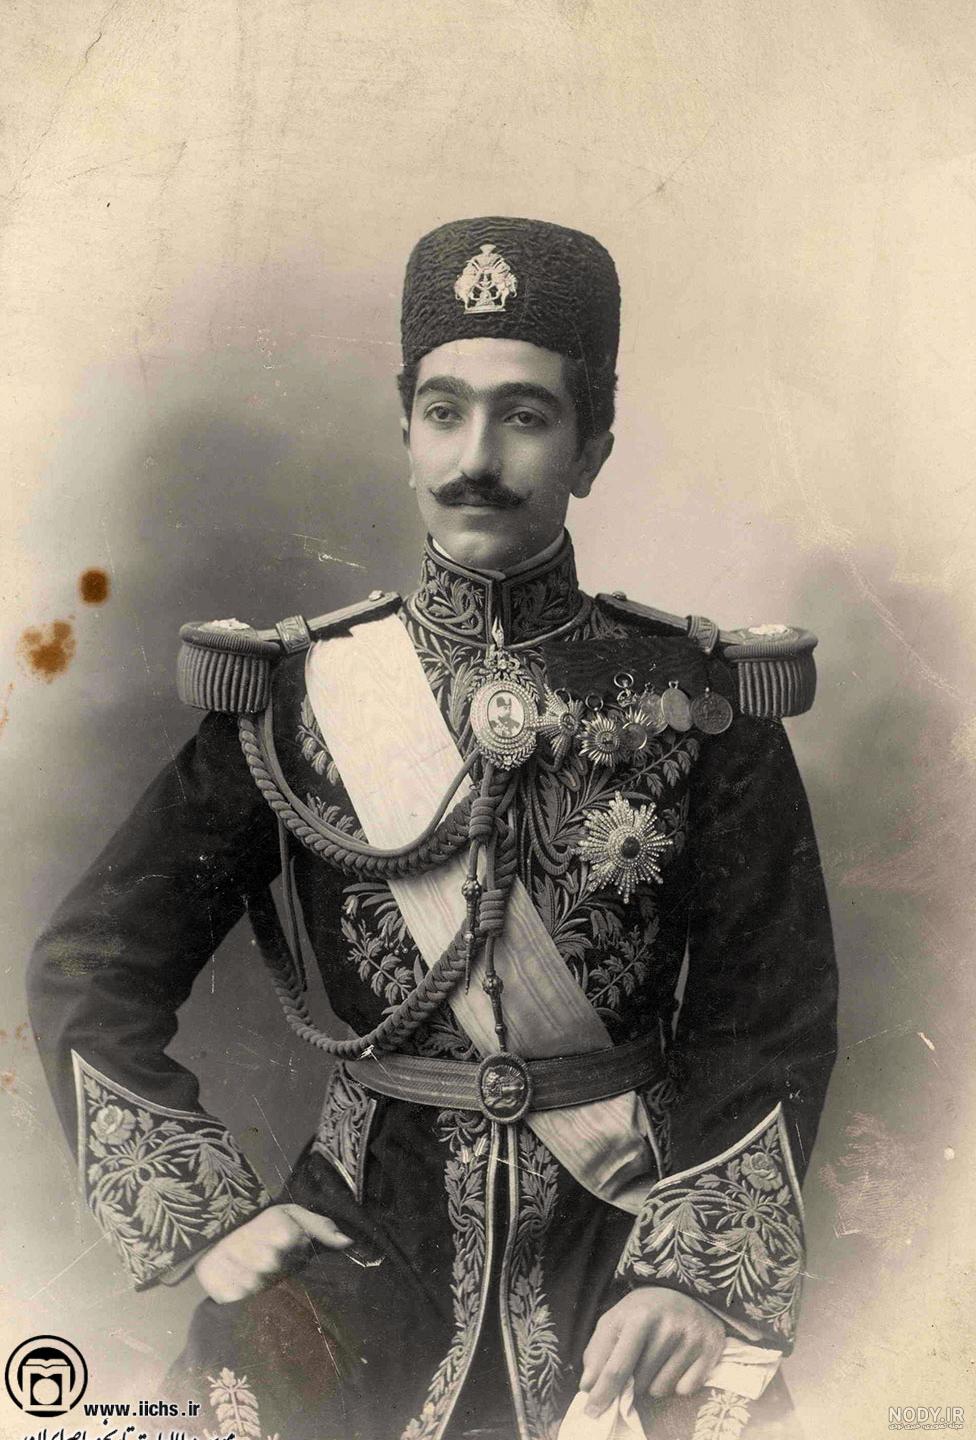 لباس شاهان قاجار